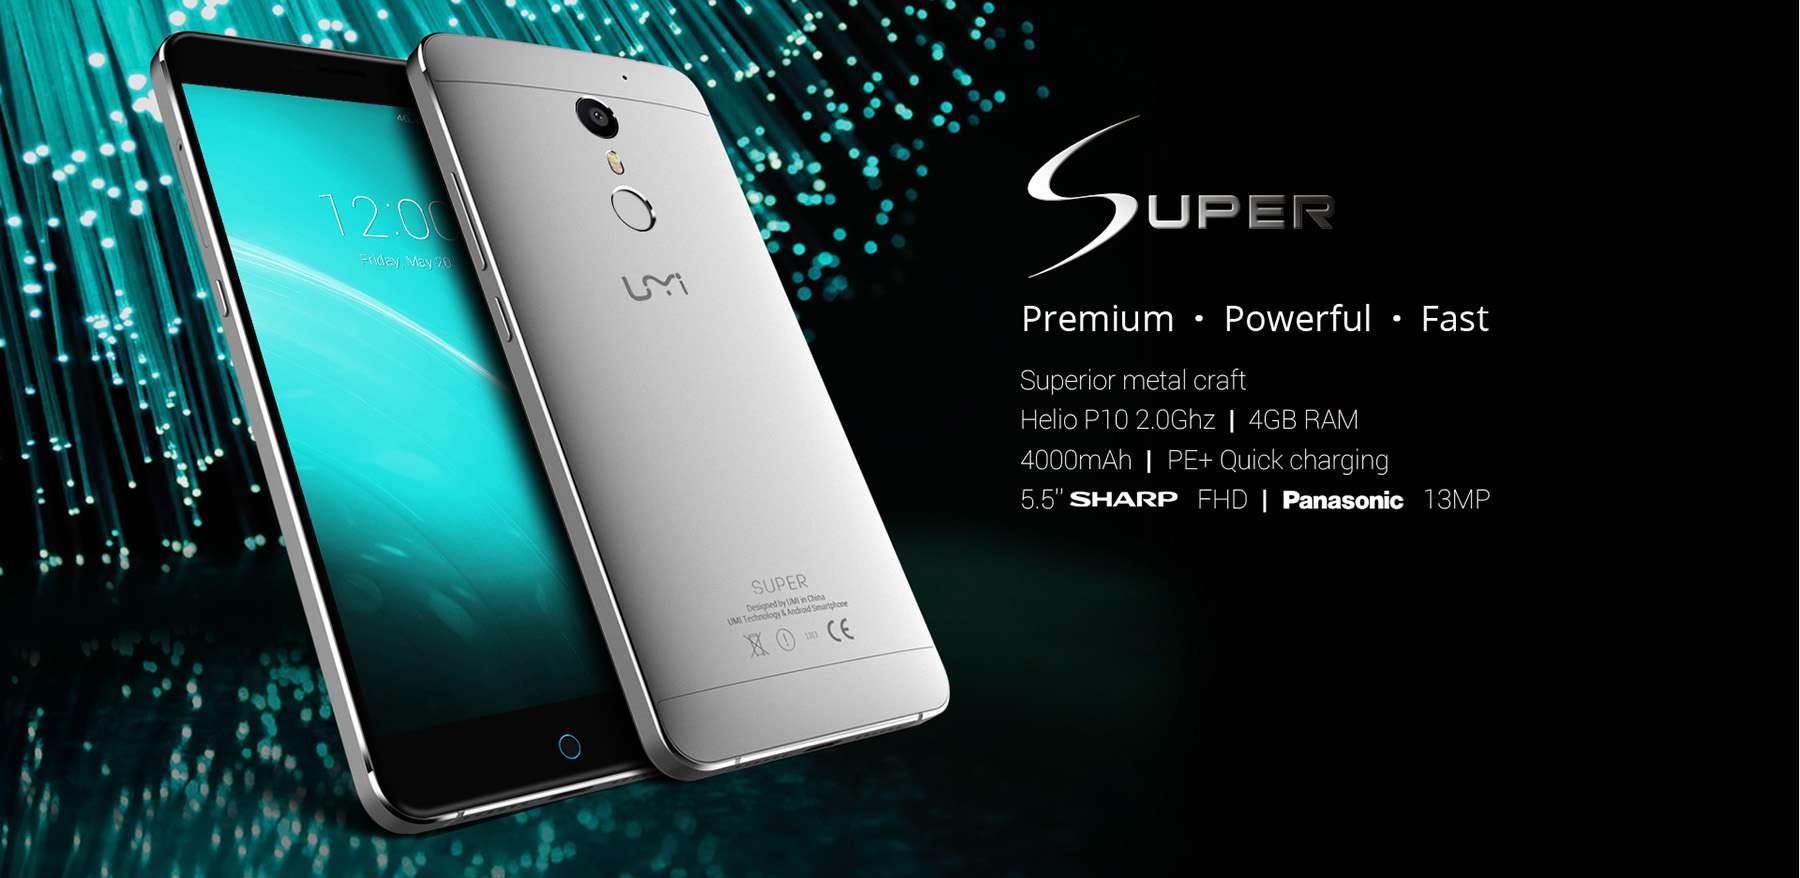 Smartfon UMI Super dostępny w niższej cenie ciekawostki UMI Super, gdzie kupić UMI Super, cena UMI Super  Xiaomi Redmi 3 Pro to nie jedyny objęty wyprzedażą smartfon, kolejnym ciekawym kąskiem może okazać się UMI Super, który jest od niego trochę większy i wydaje się lepszym wyborem dla osób niezważających na rozmiary smartfonu. 1463197973820154